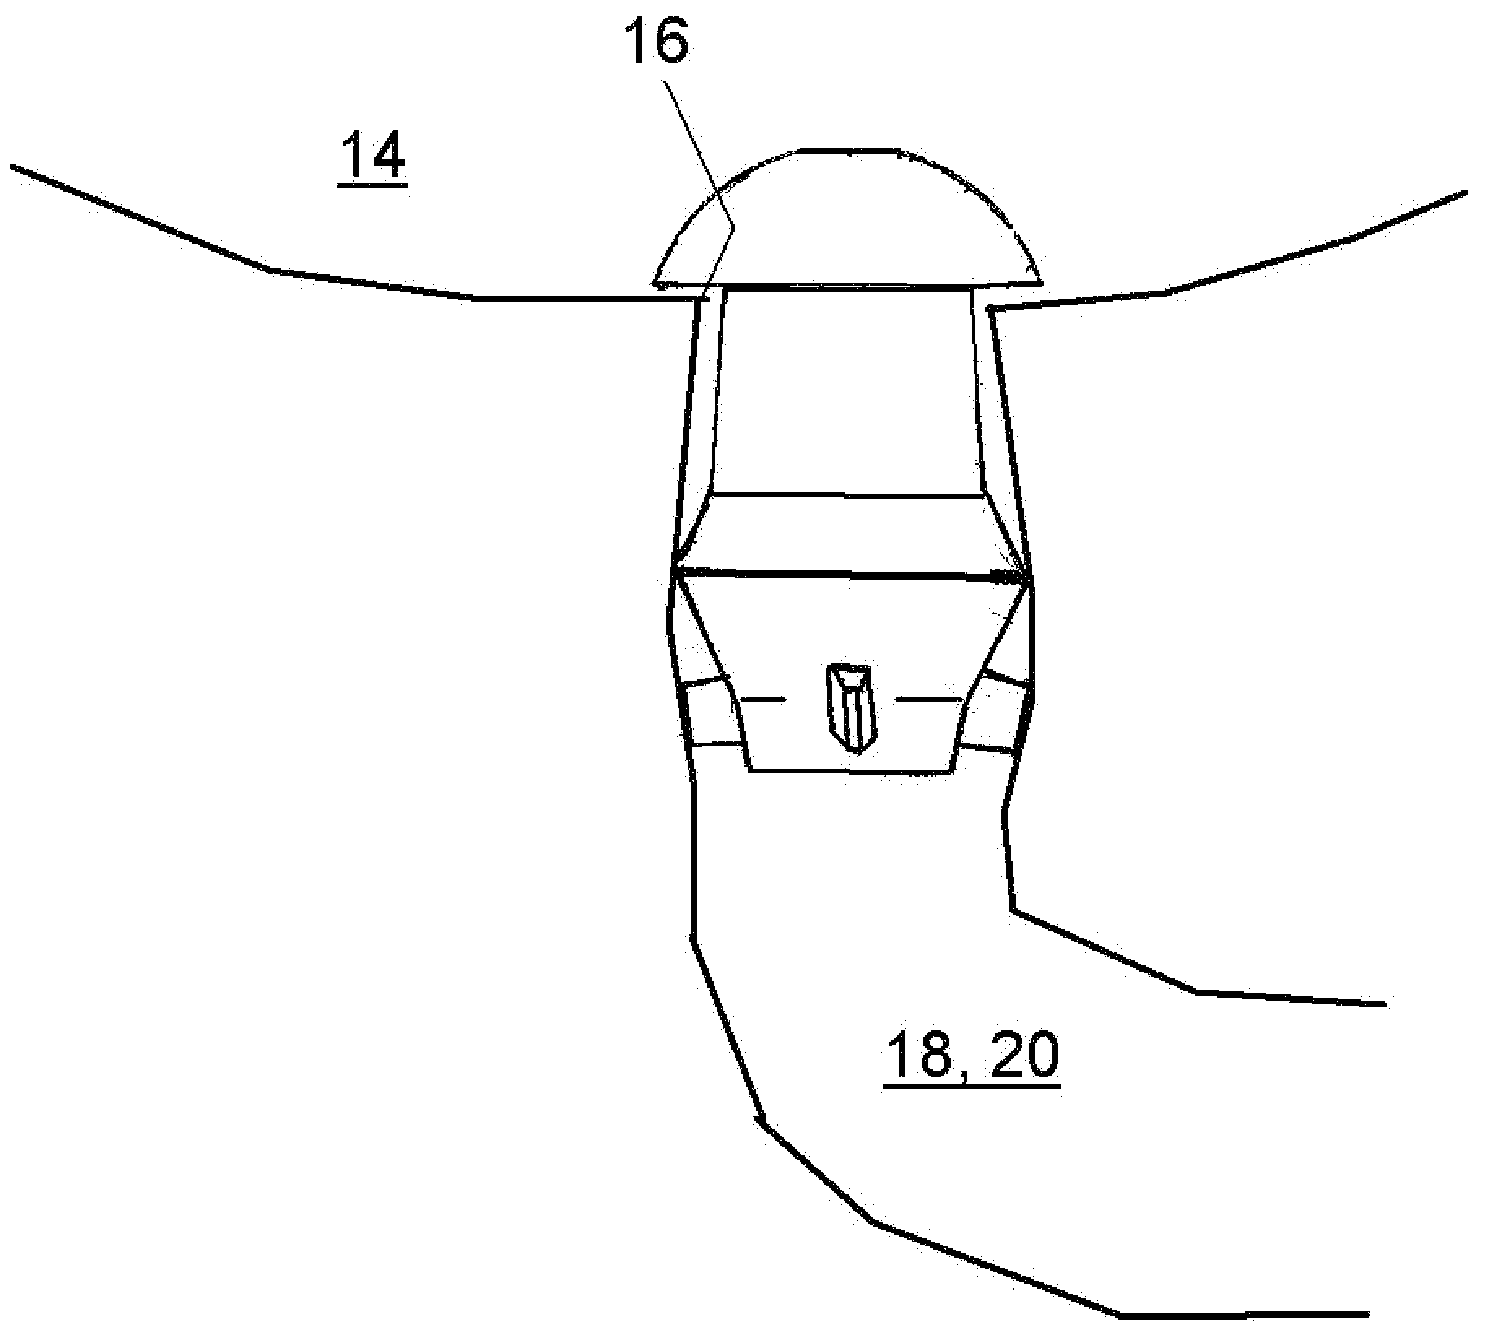 Multi-piece punctal plug